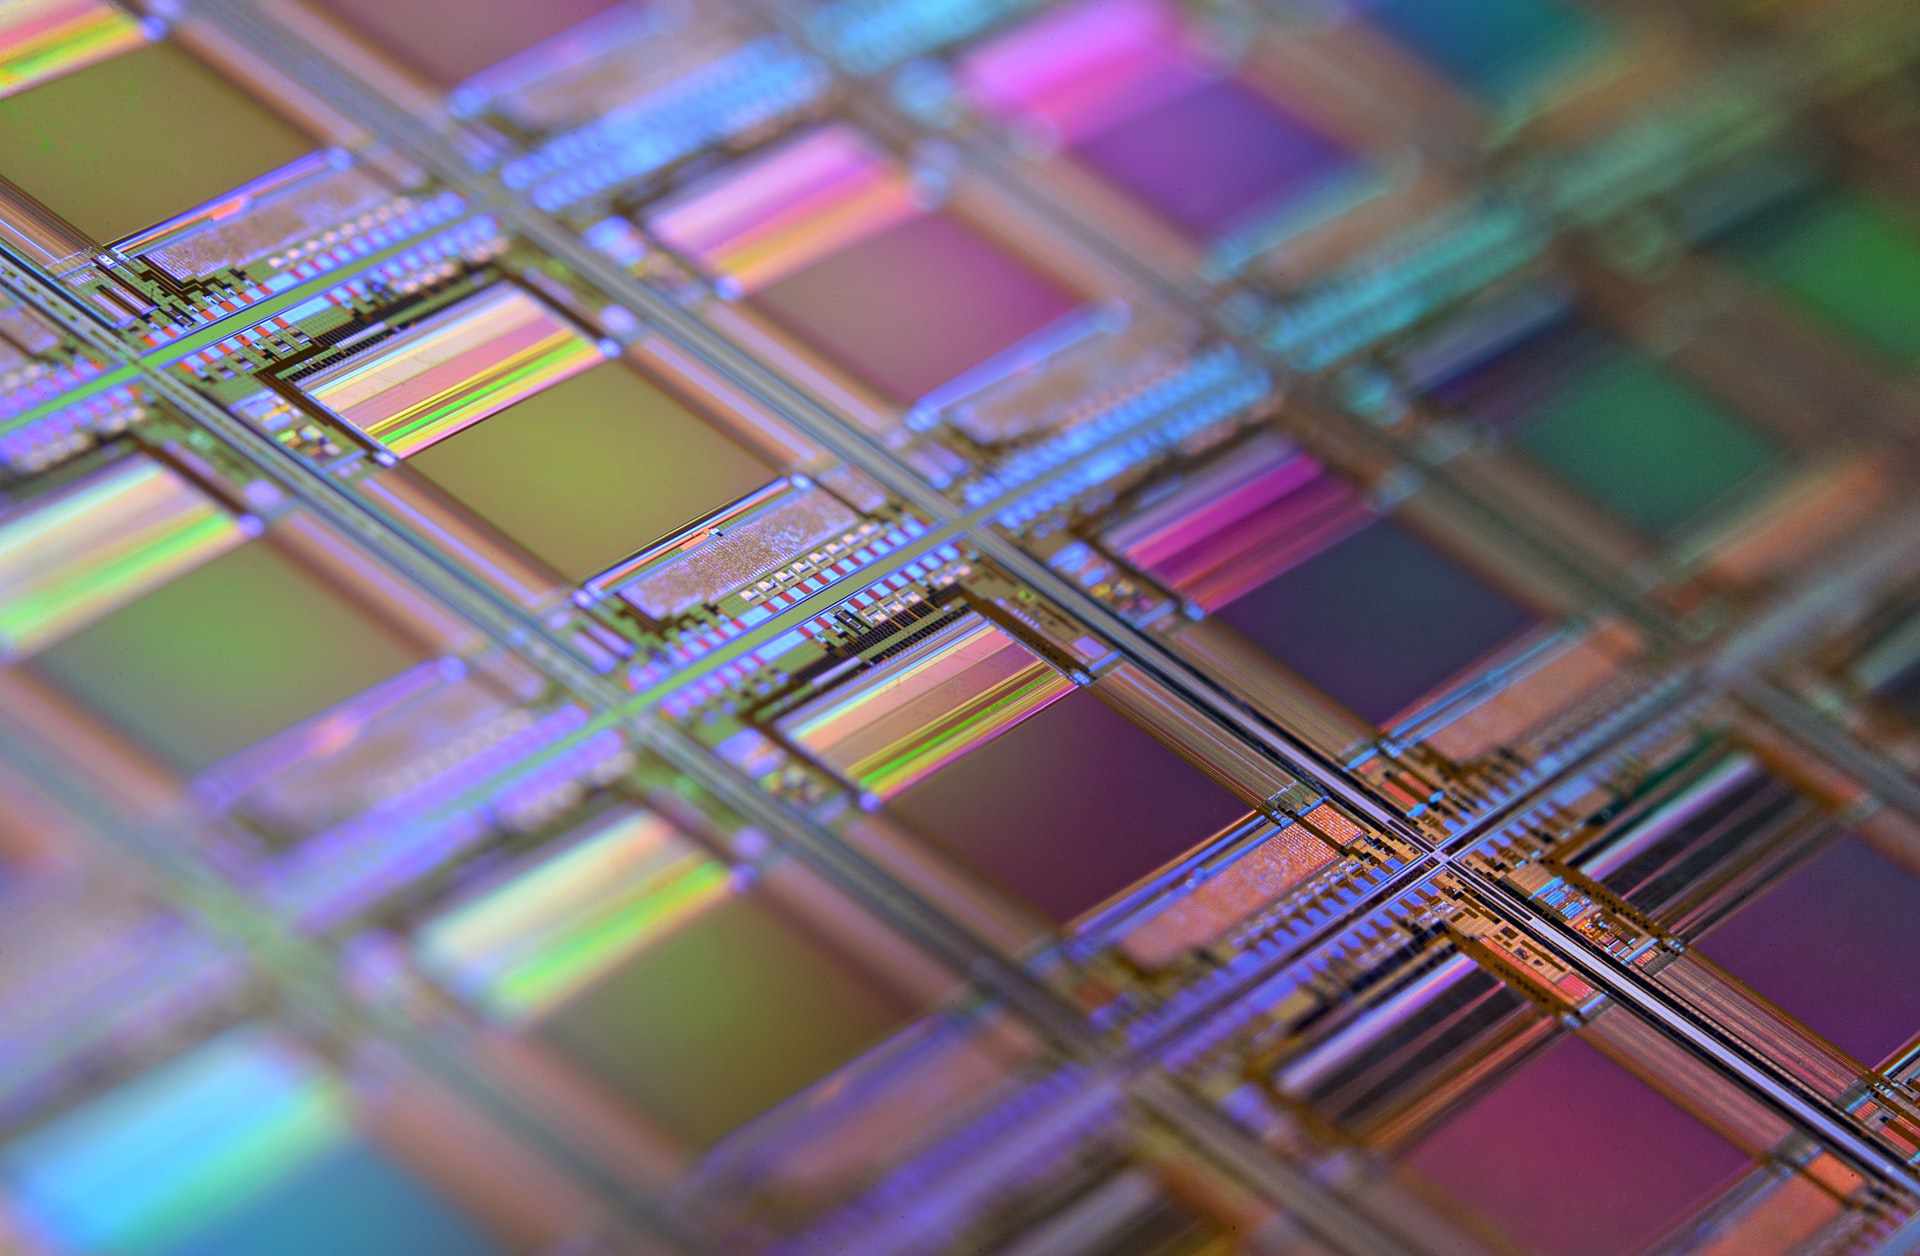 Makro křemíkové destičky, každý čtverec je čip s mikroskopickými tranzistory a obvody.